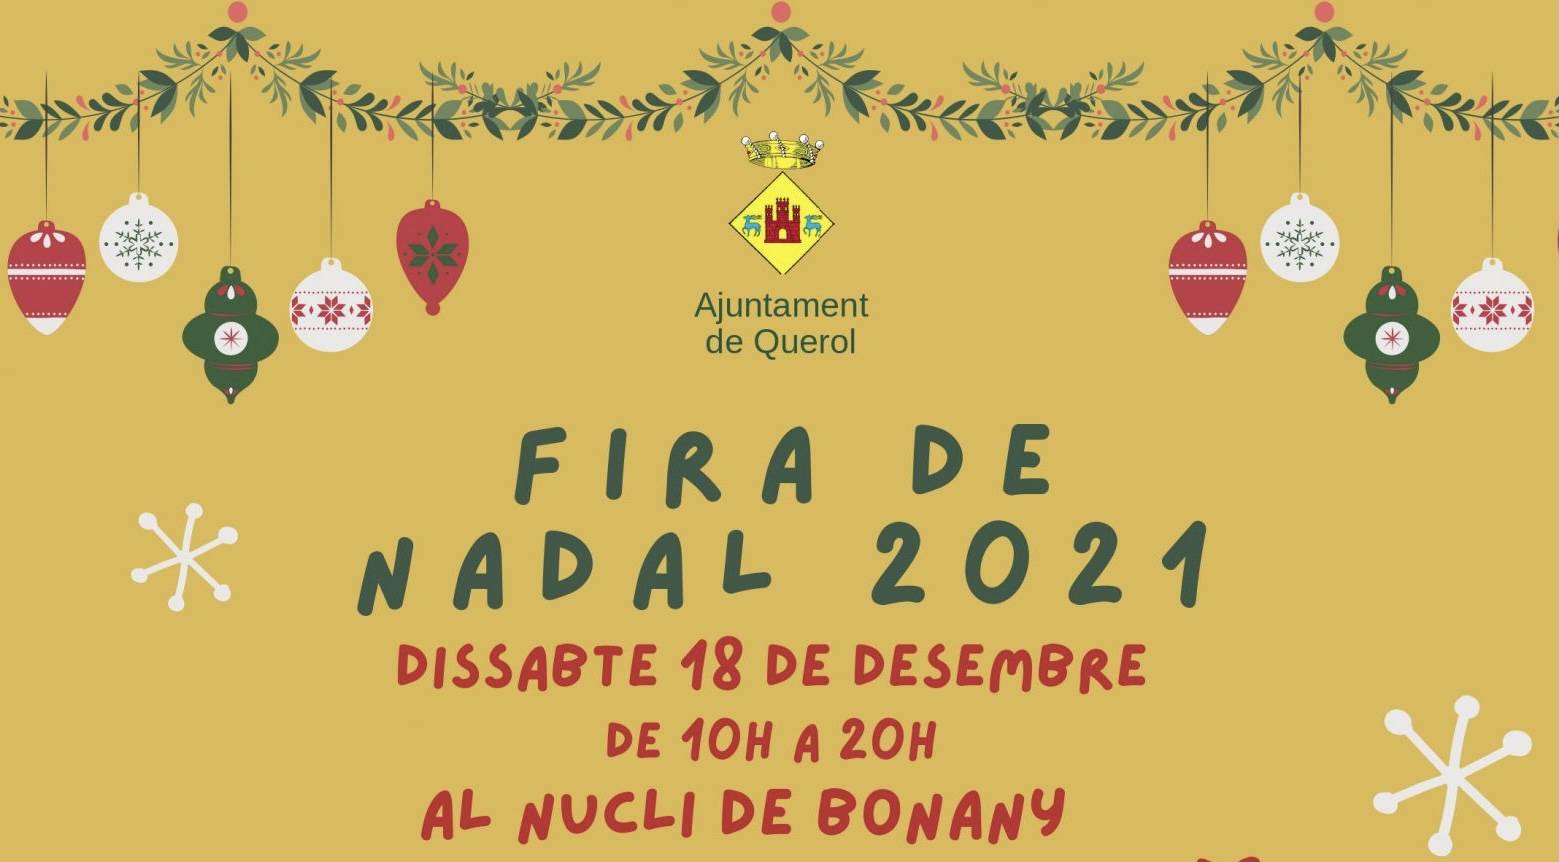 Fira de Nadal a Bonany de Querol 2021